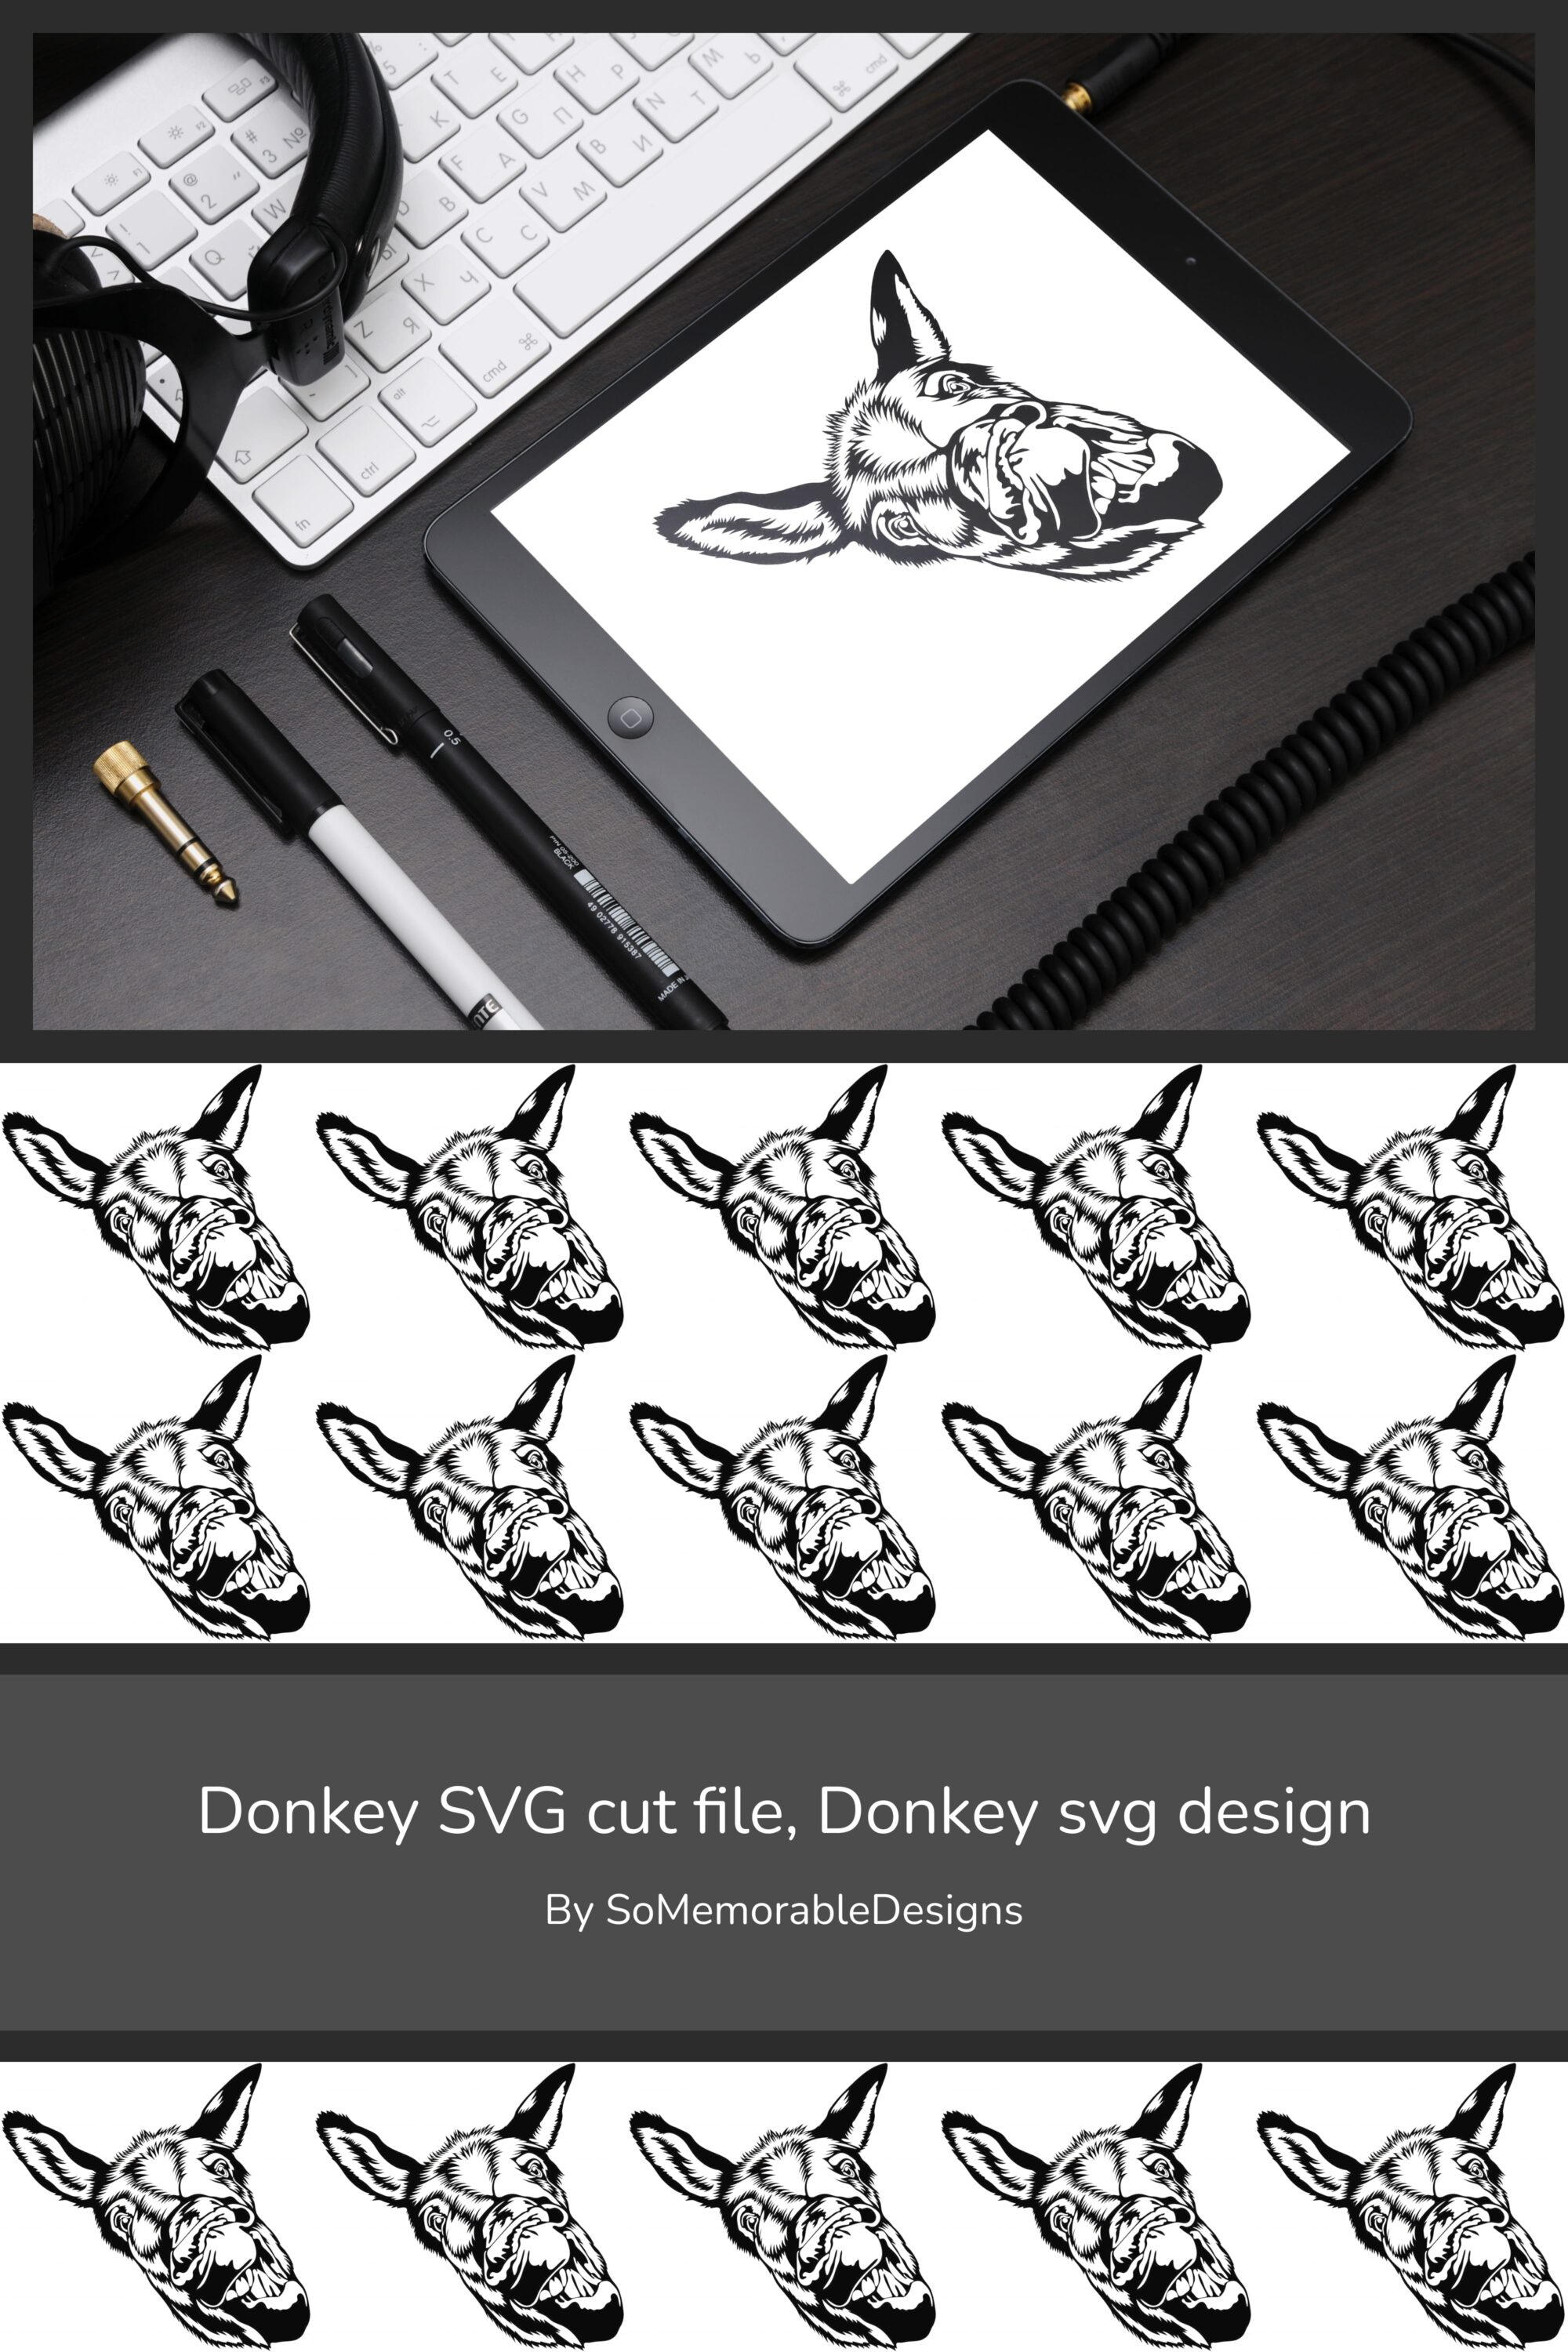 donkey svg cut file donkey svg design 03 866